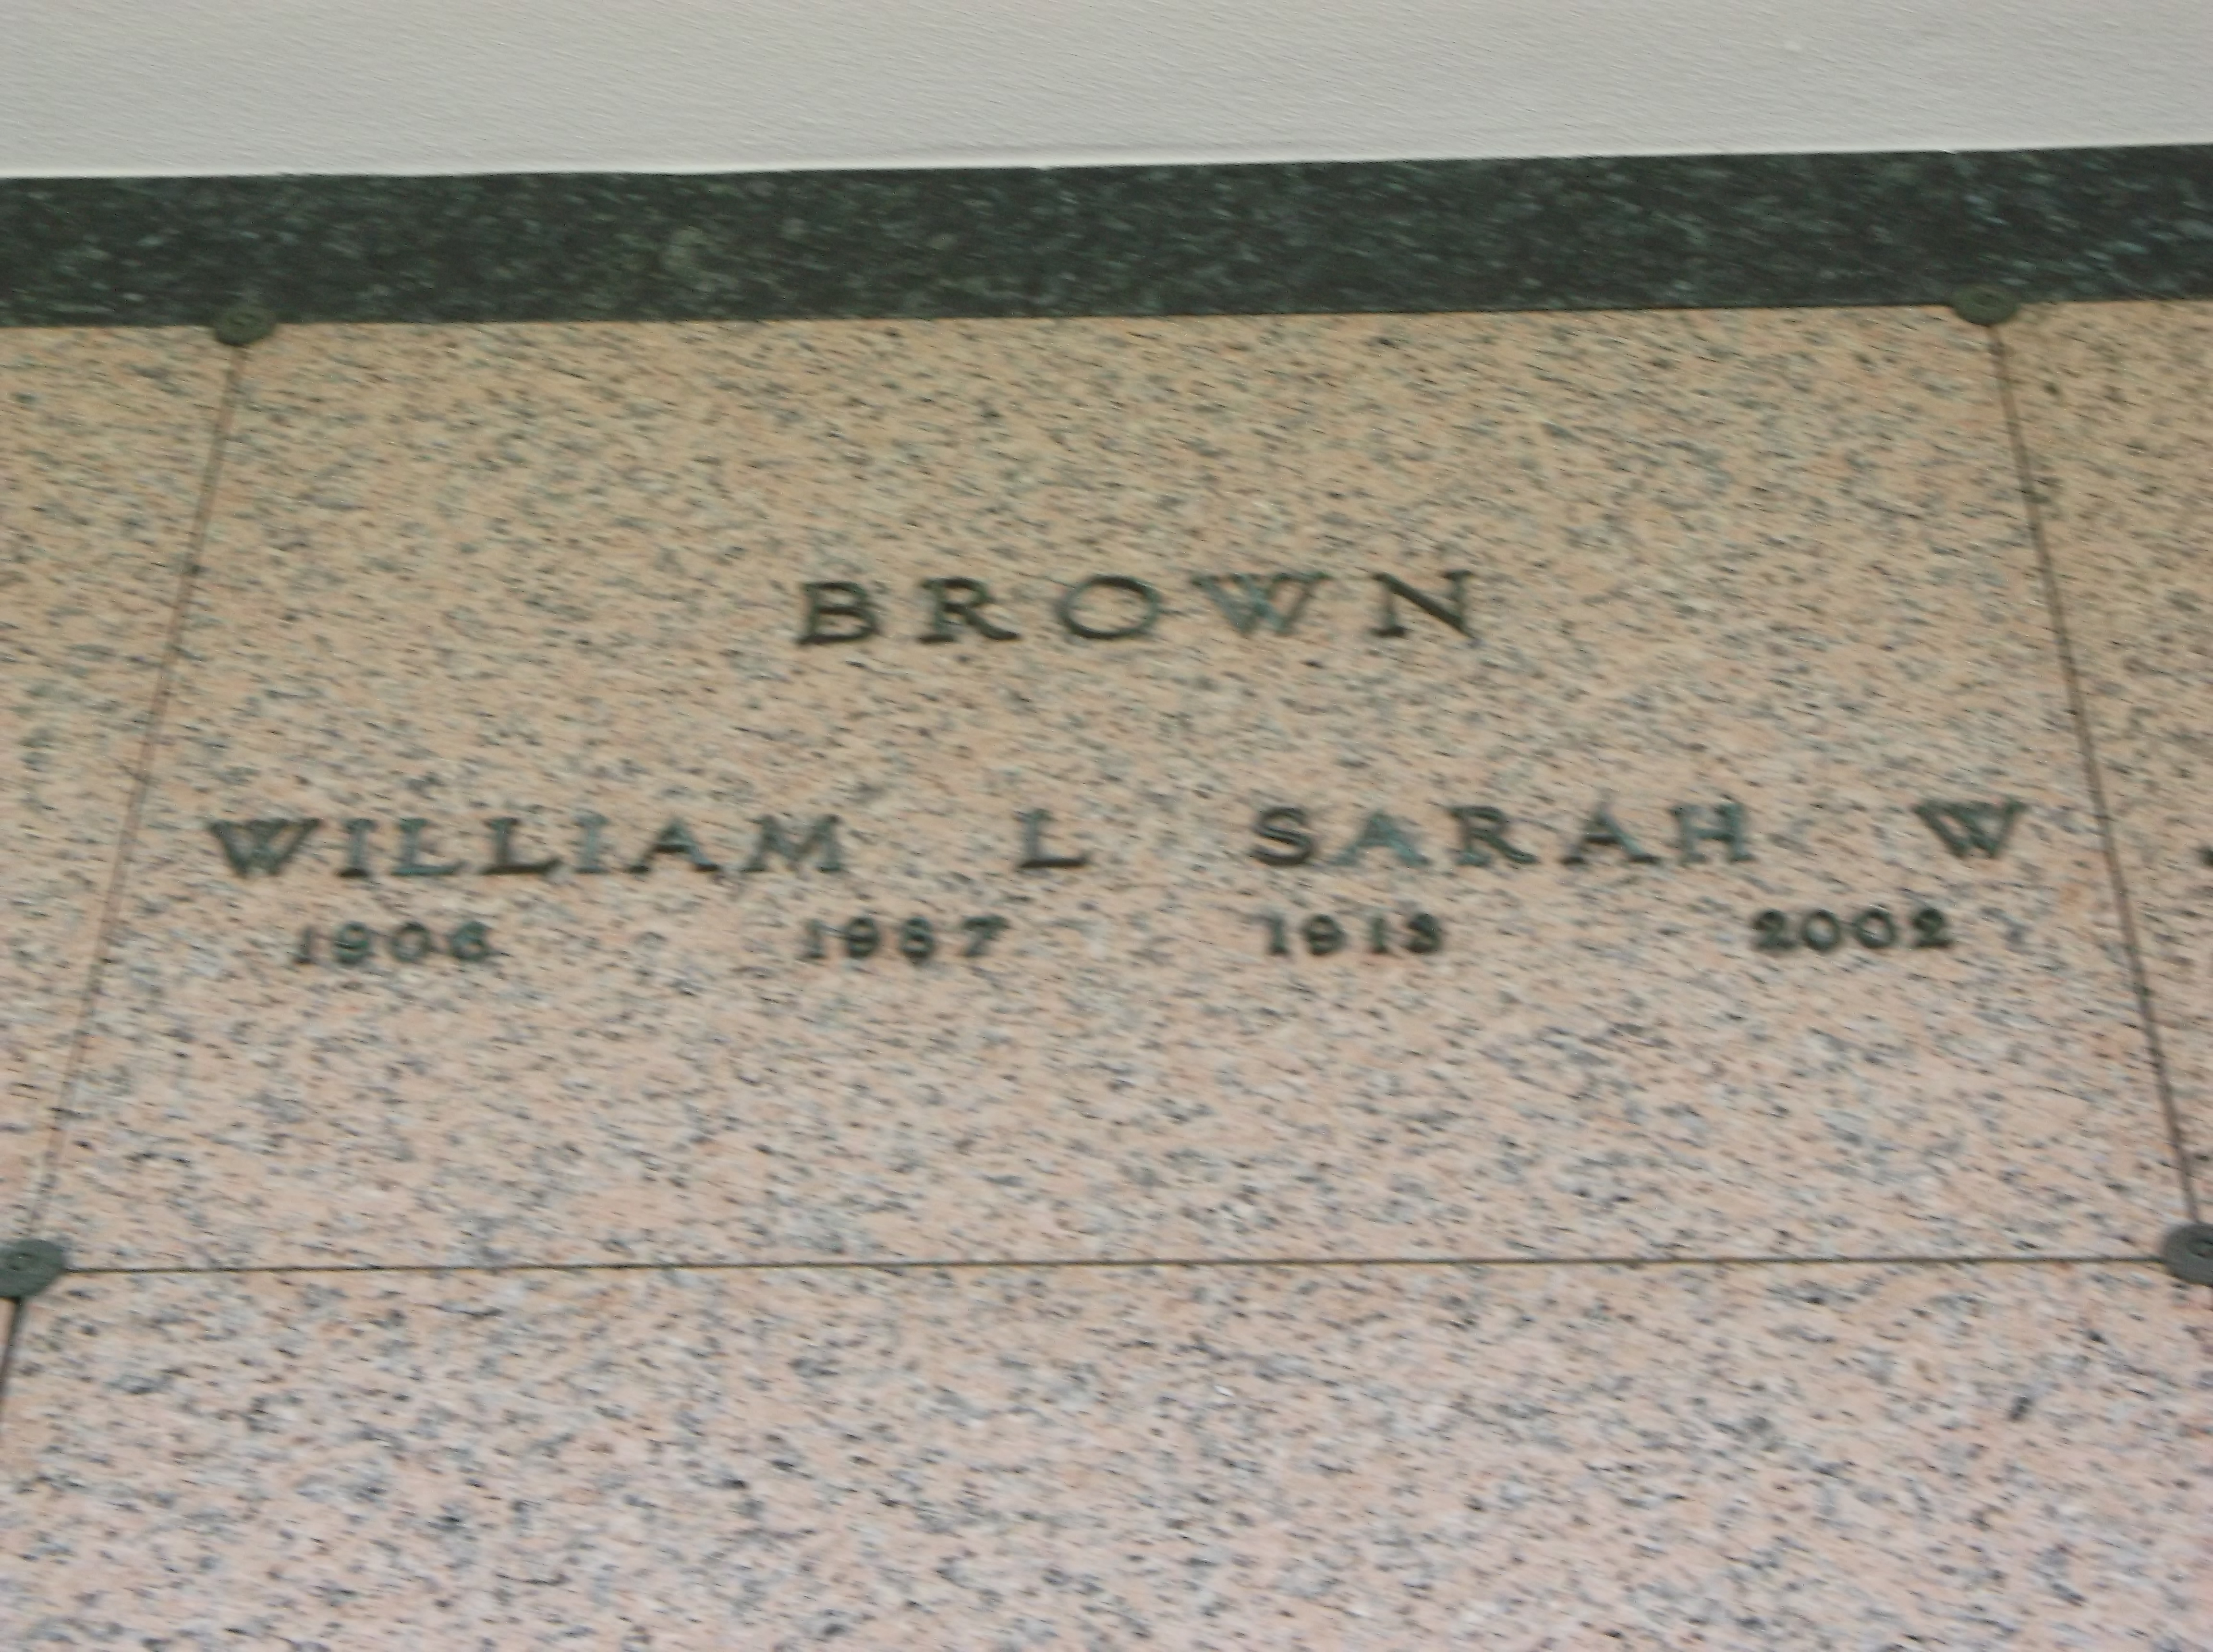 Sarah W Brown